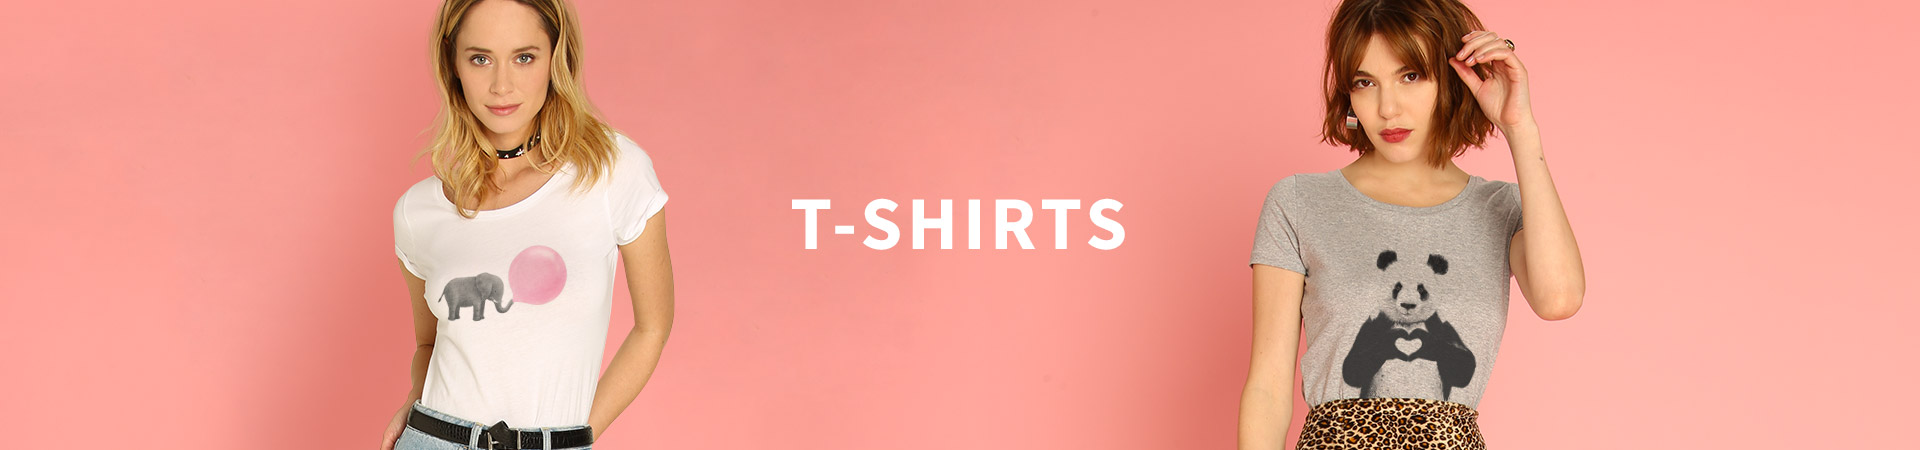 T-Shirt Femme